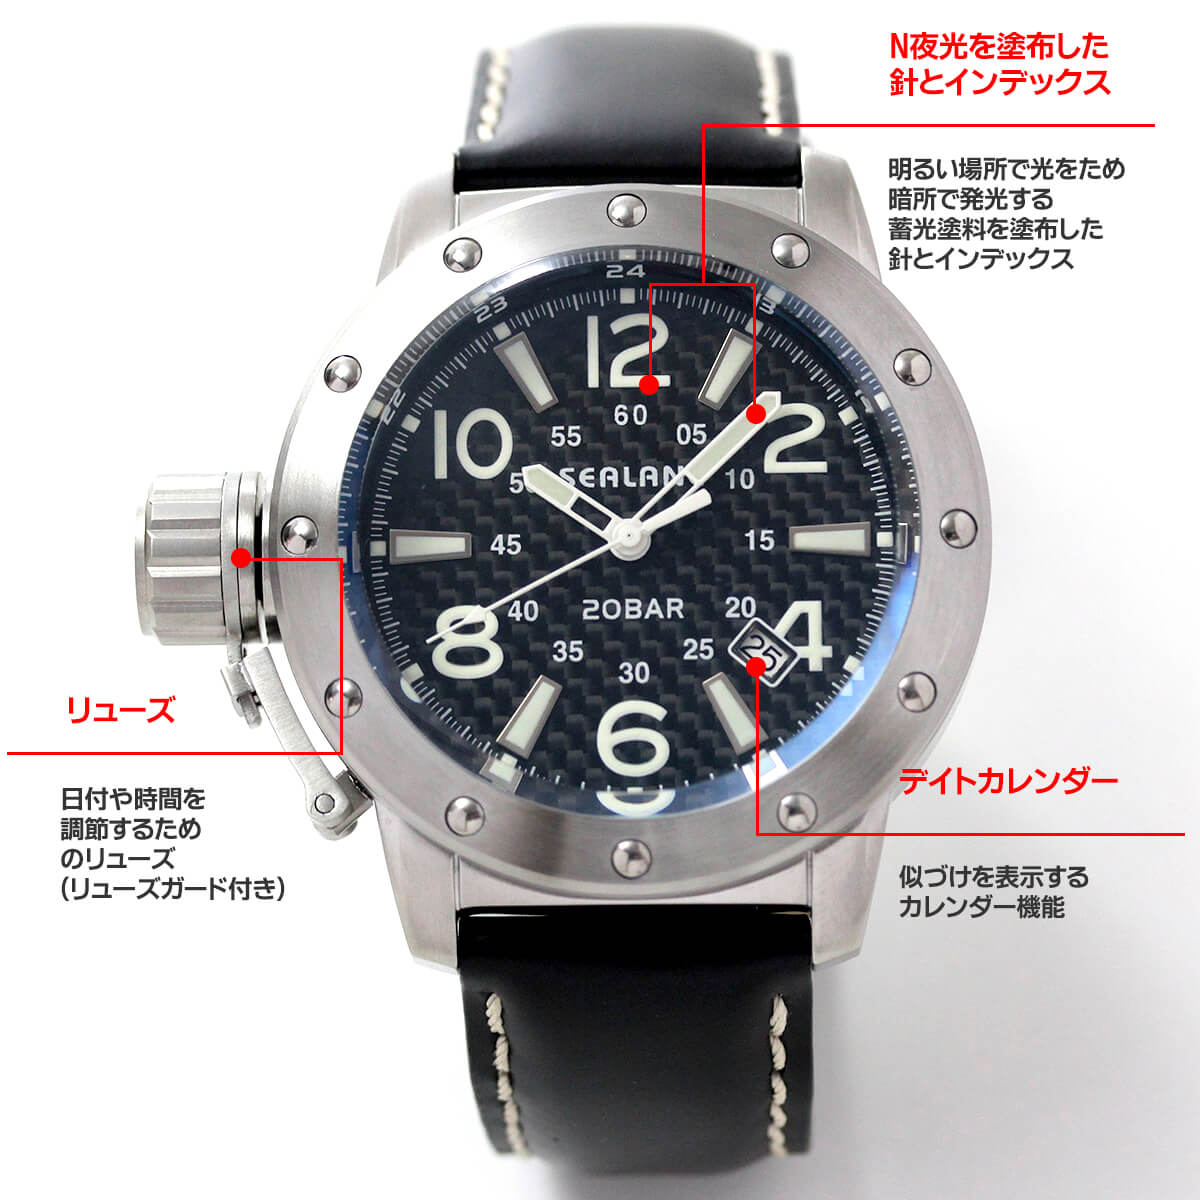 SEALANE(シーレーン) 腕時計 SE54-LBK